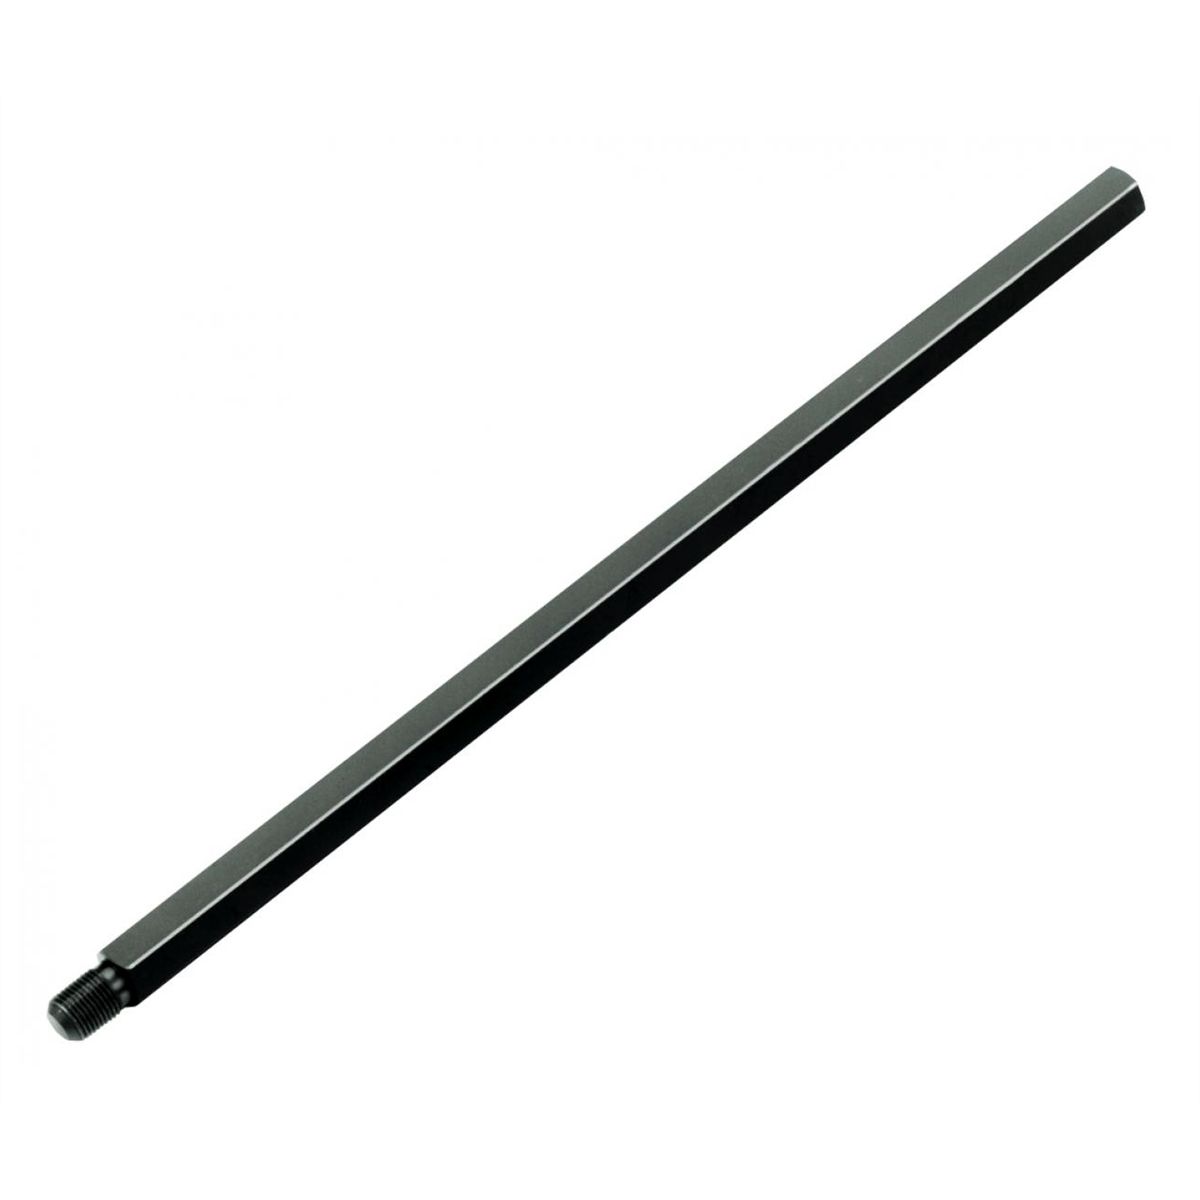 Slide Hammer Extension - 17 1/2 Long